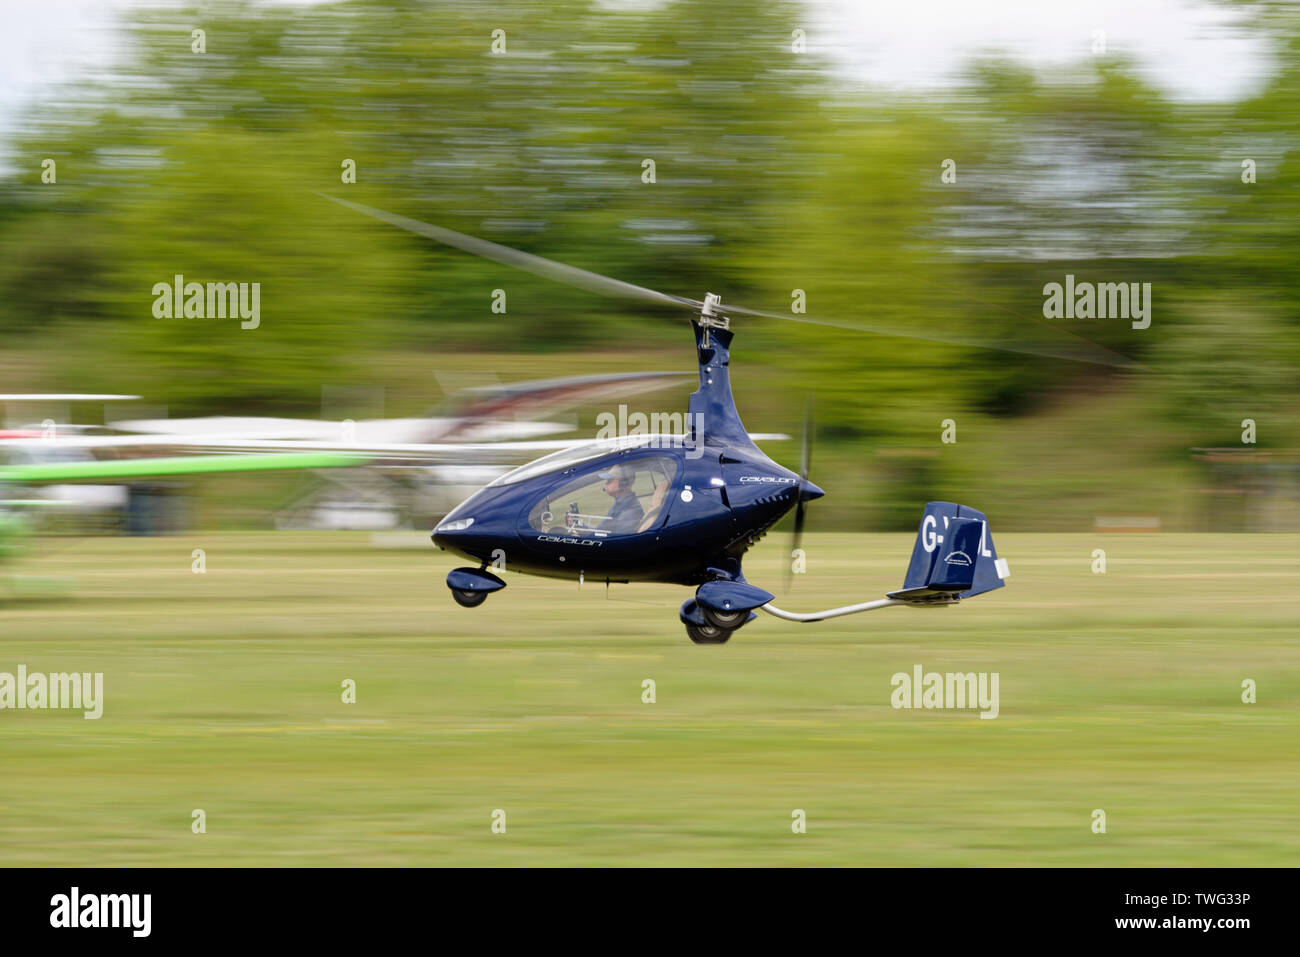 Rotorsport sport bleu Cavalon Autogyre avion décolle à l'aérodrome de Popham près de Basingstoke, Hampshire, Royaume-Uni Banque D'Images